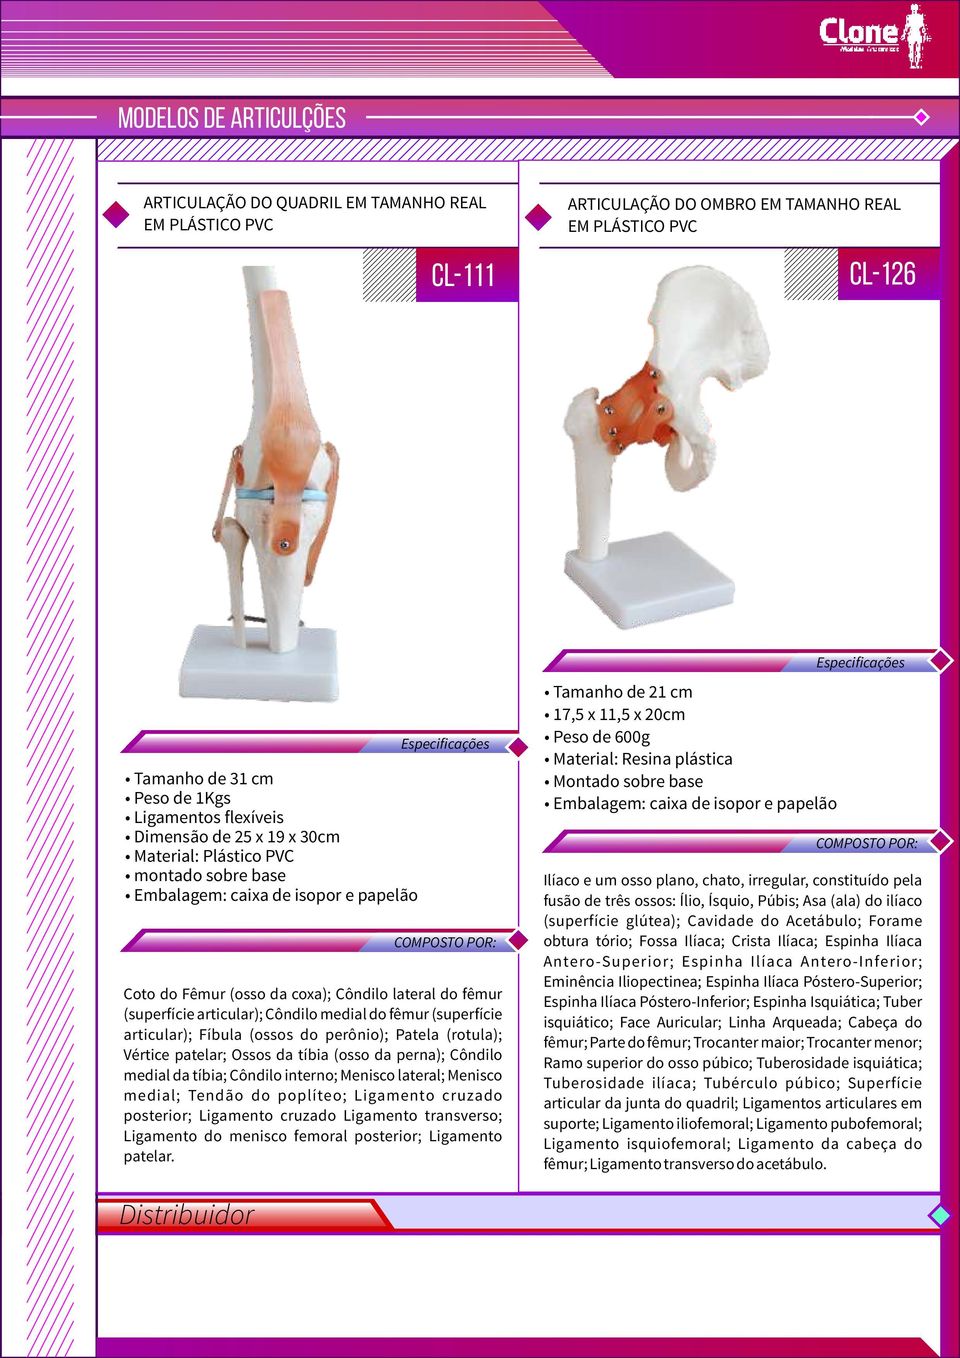 do fêmur (superfície articular); Fíbula (ossos do perônio); Patela (rotula); Vértice patelar; Ossos da tíbia (osso da perna); Côndilo medial da tíbia; Côndilo interno; Menisco lateral; Menisco